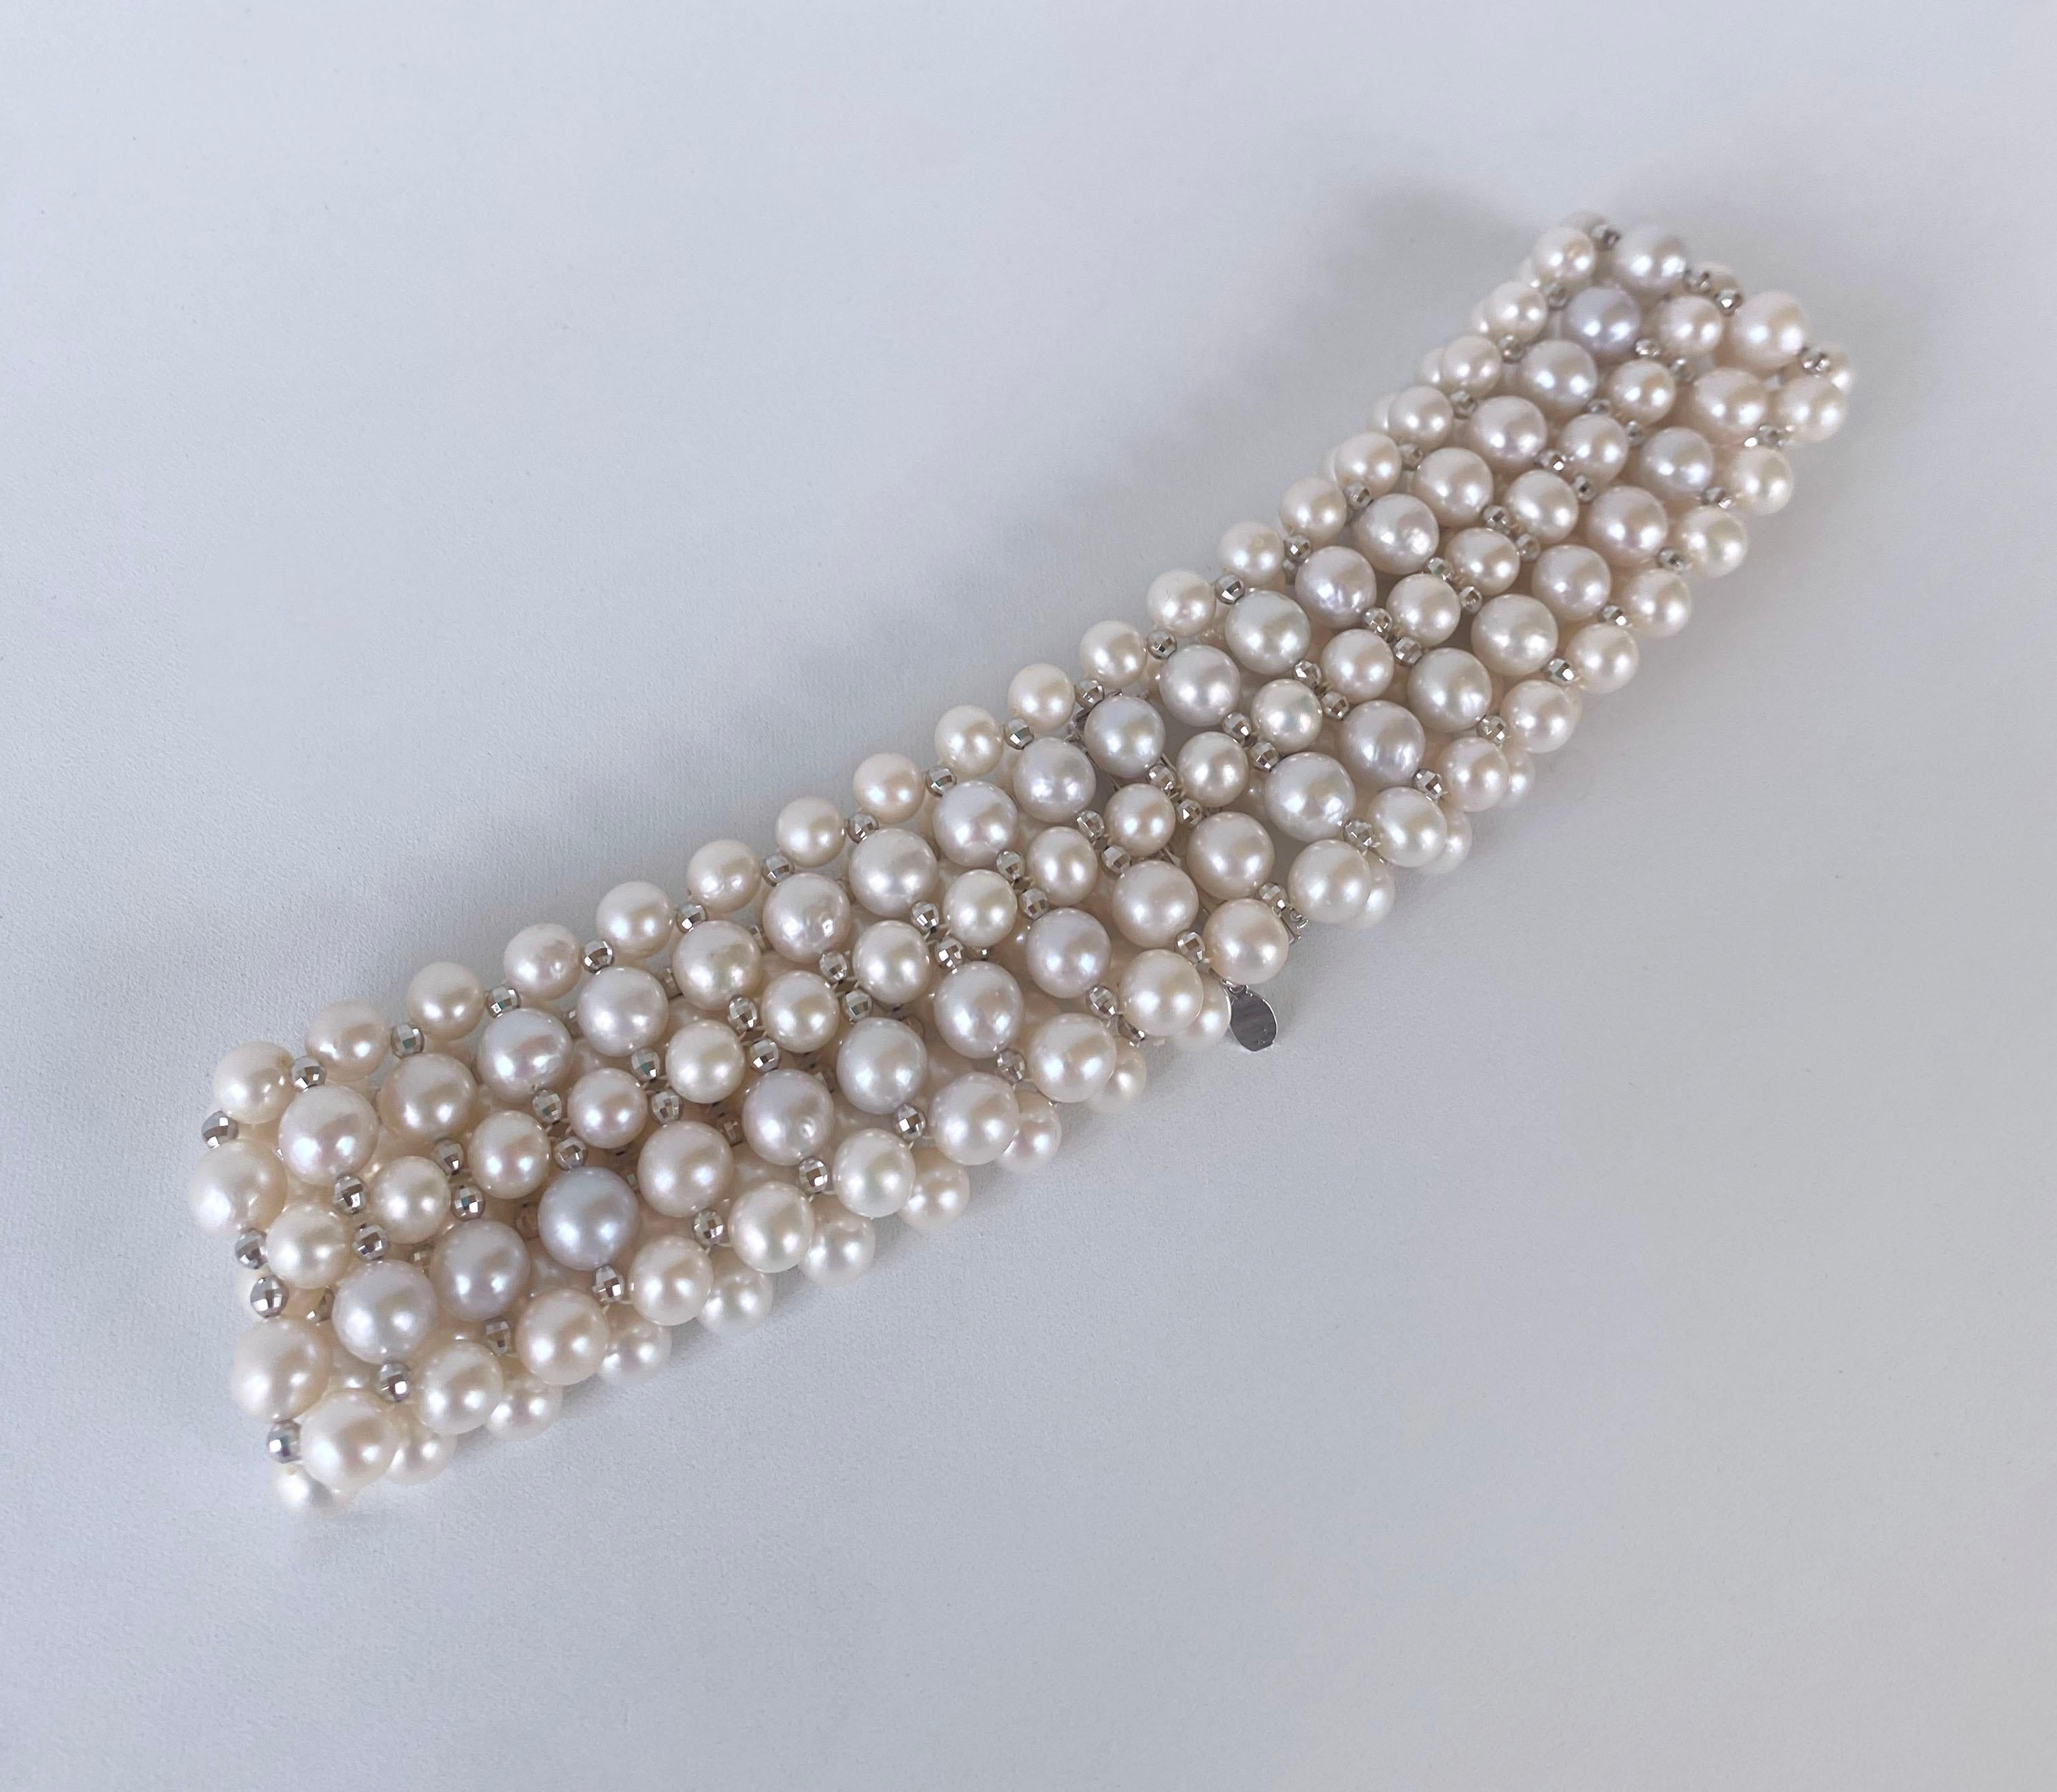 Ce magnifique collier ras du cou est composé de perles blanches très brillantes, qui présentent un éclat magnifique, le tout tissé en un magnifique motif. Des perles facettées en argent plaqué or blanc sont tissées entre les perles, ornant ce